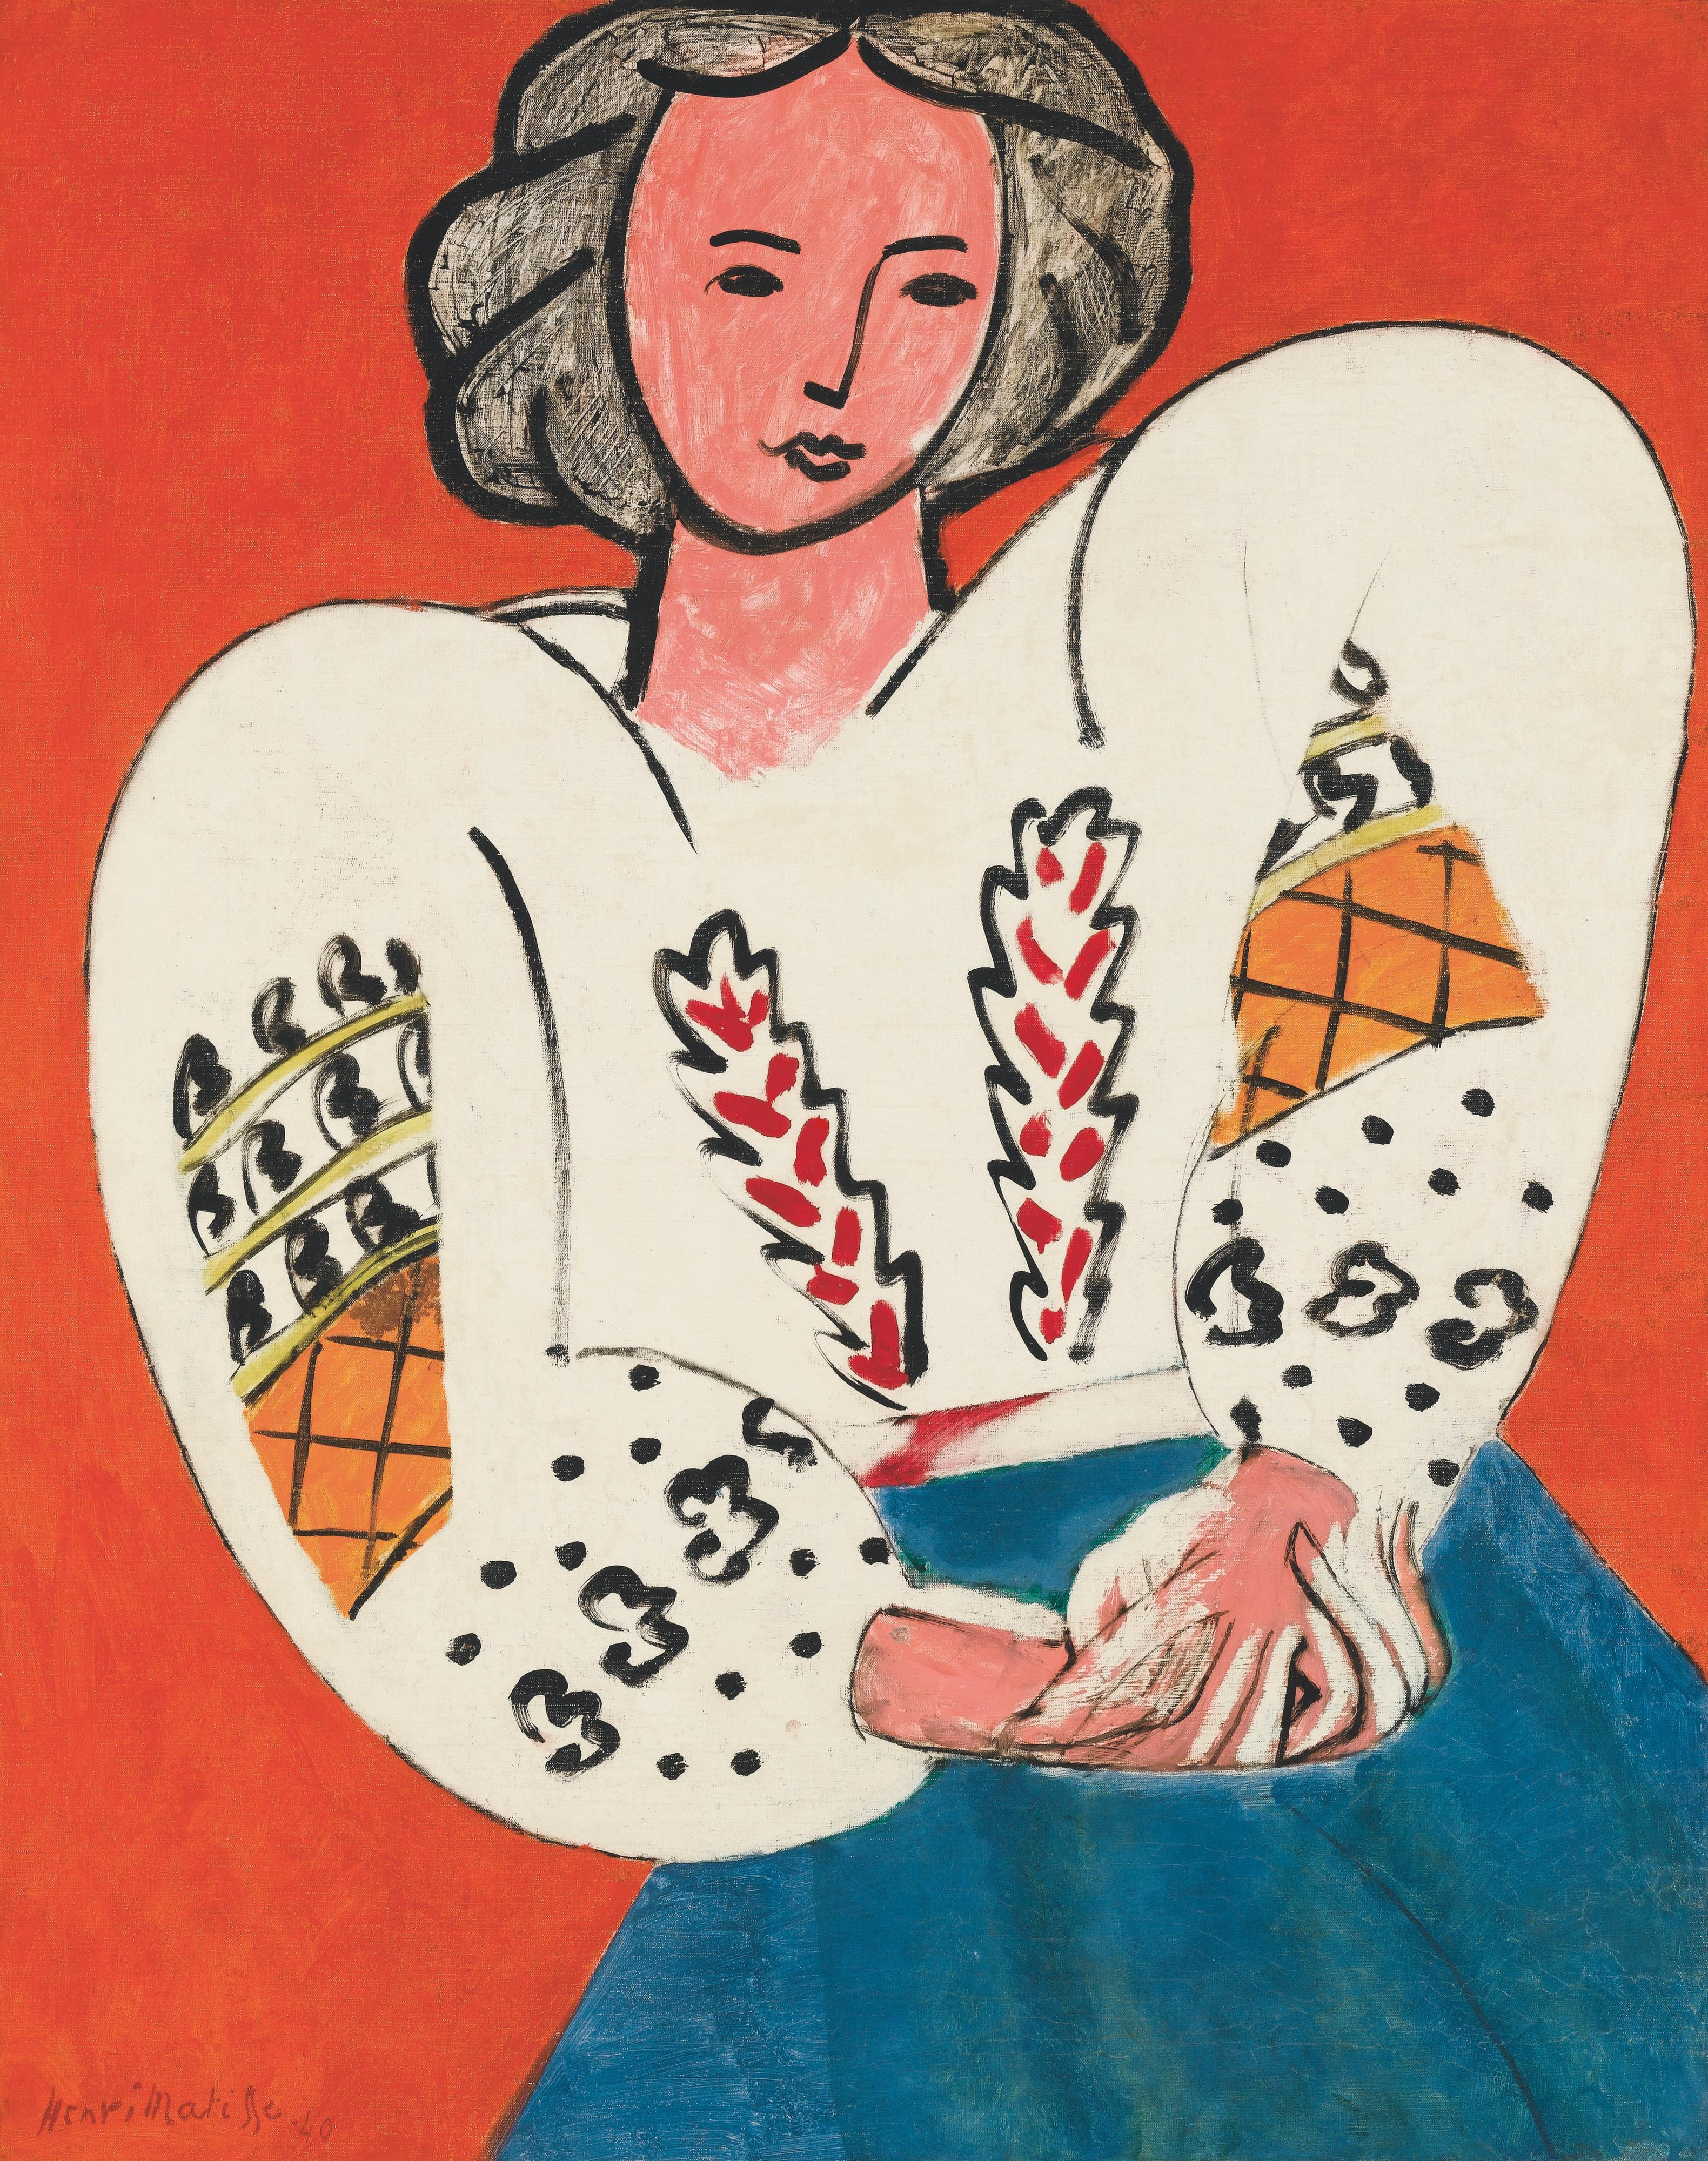 La Blouse roumaine de Henri Matisse (1940), huile sur toile présenté dans le cadre de l'exposition "Matisse, comme un roman" au Centre Pompidou à Paris. [Centre Pompidou, Mnam-Cci/Georges Meguerditchian - © Succession H.Matisse]